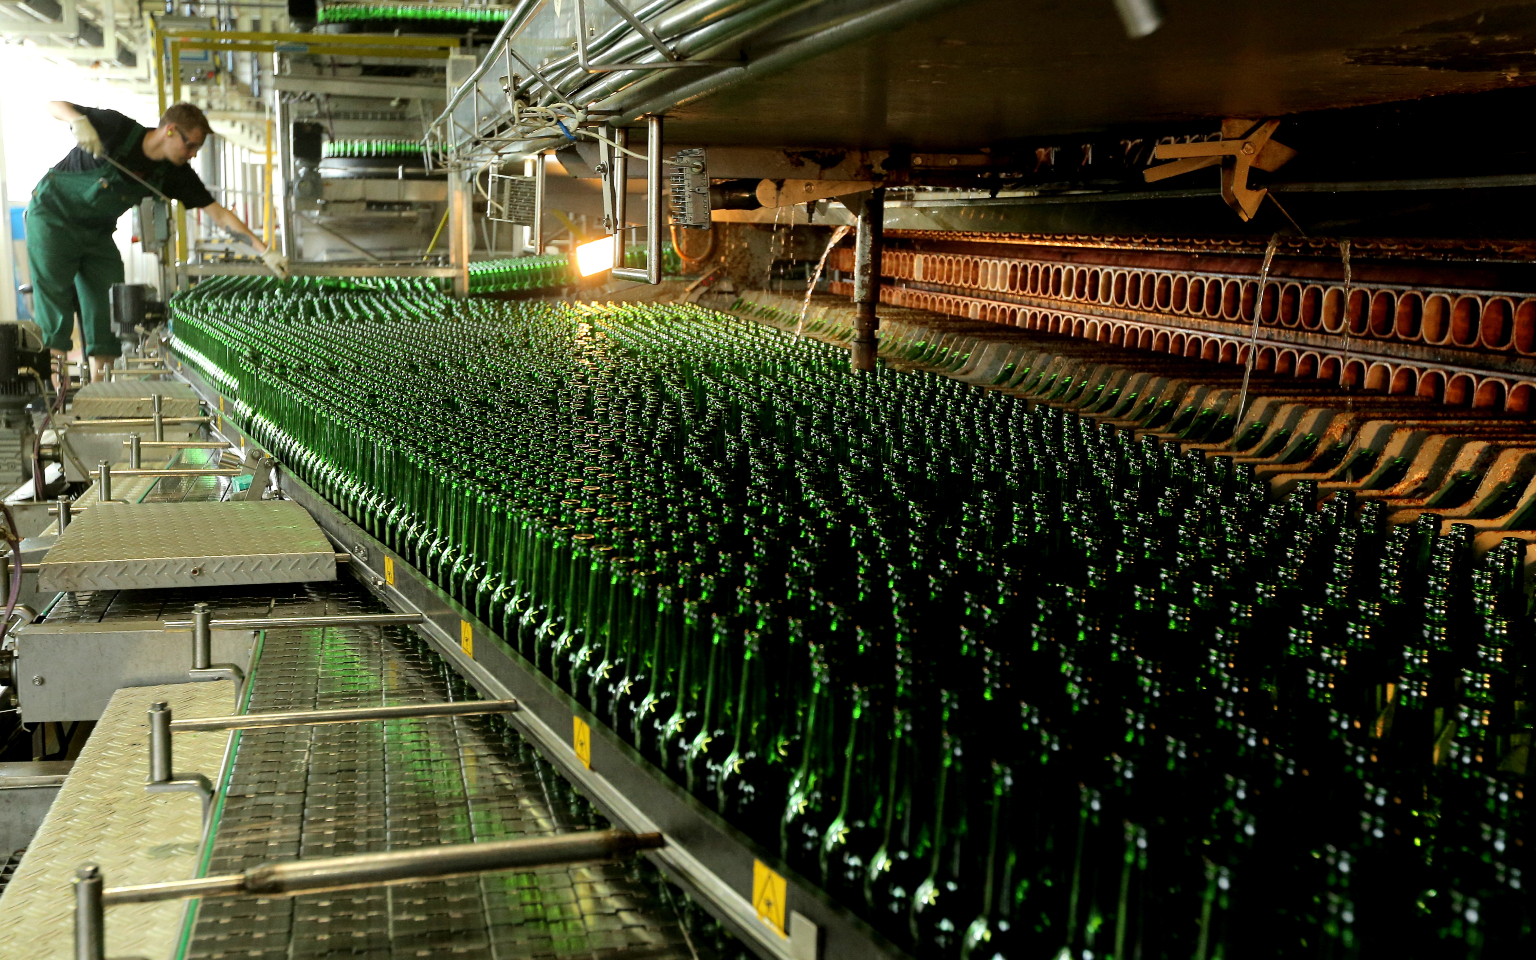 Производители пива попросили ужесточить требования к его составу